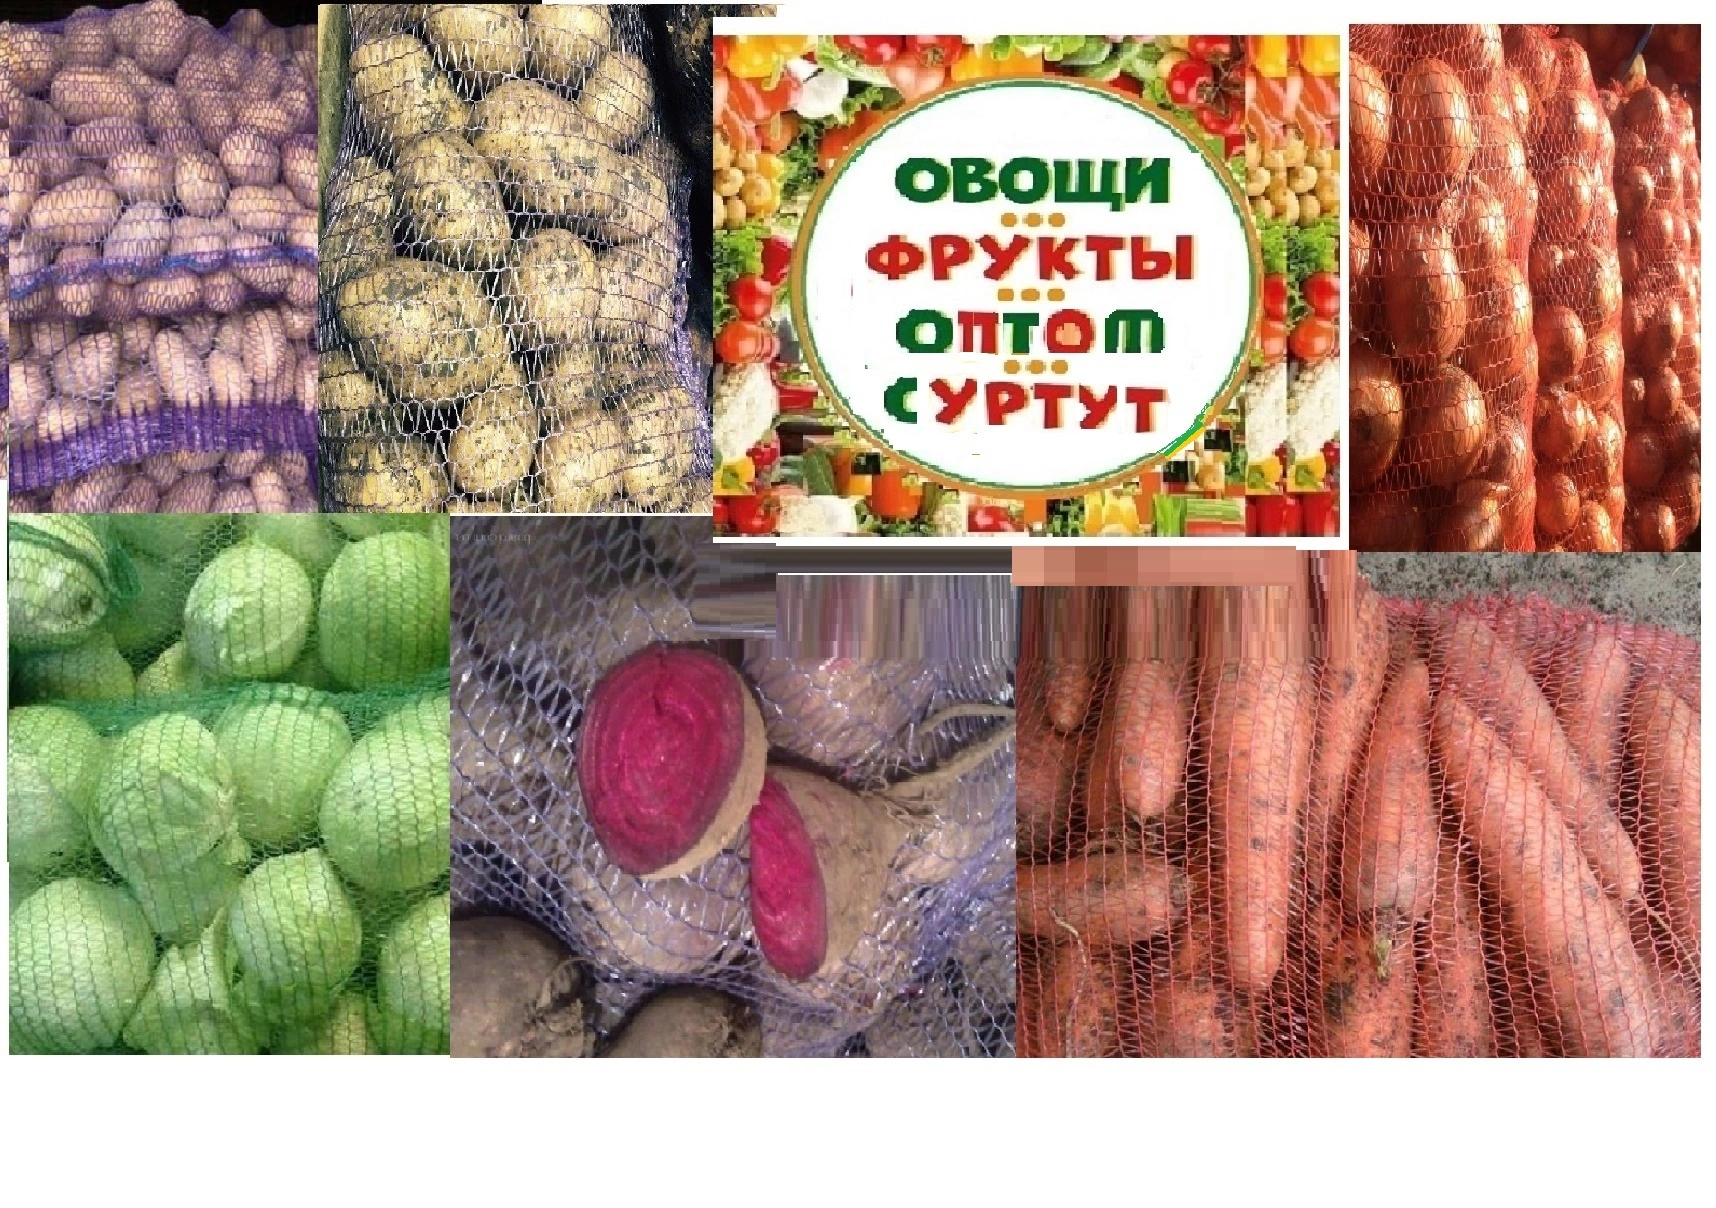 купим картофель оптом  в Ханты-Мансийске и Ханты-Мансийском автономном округе Югра